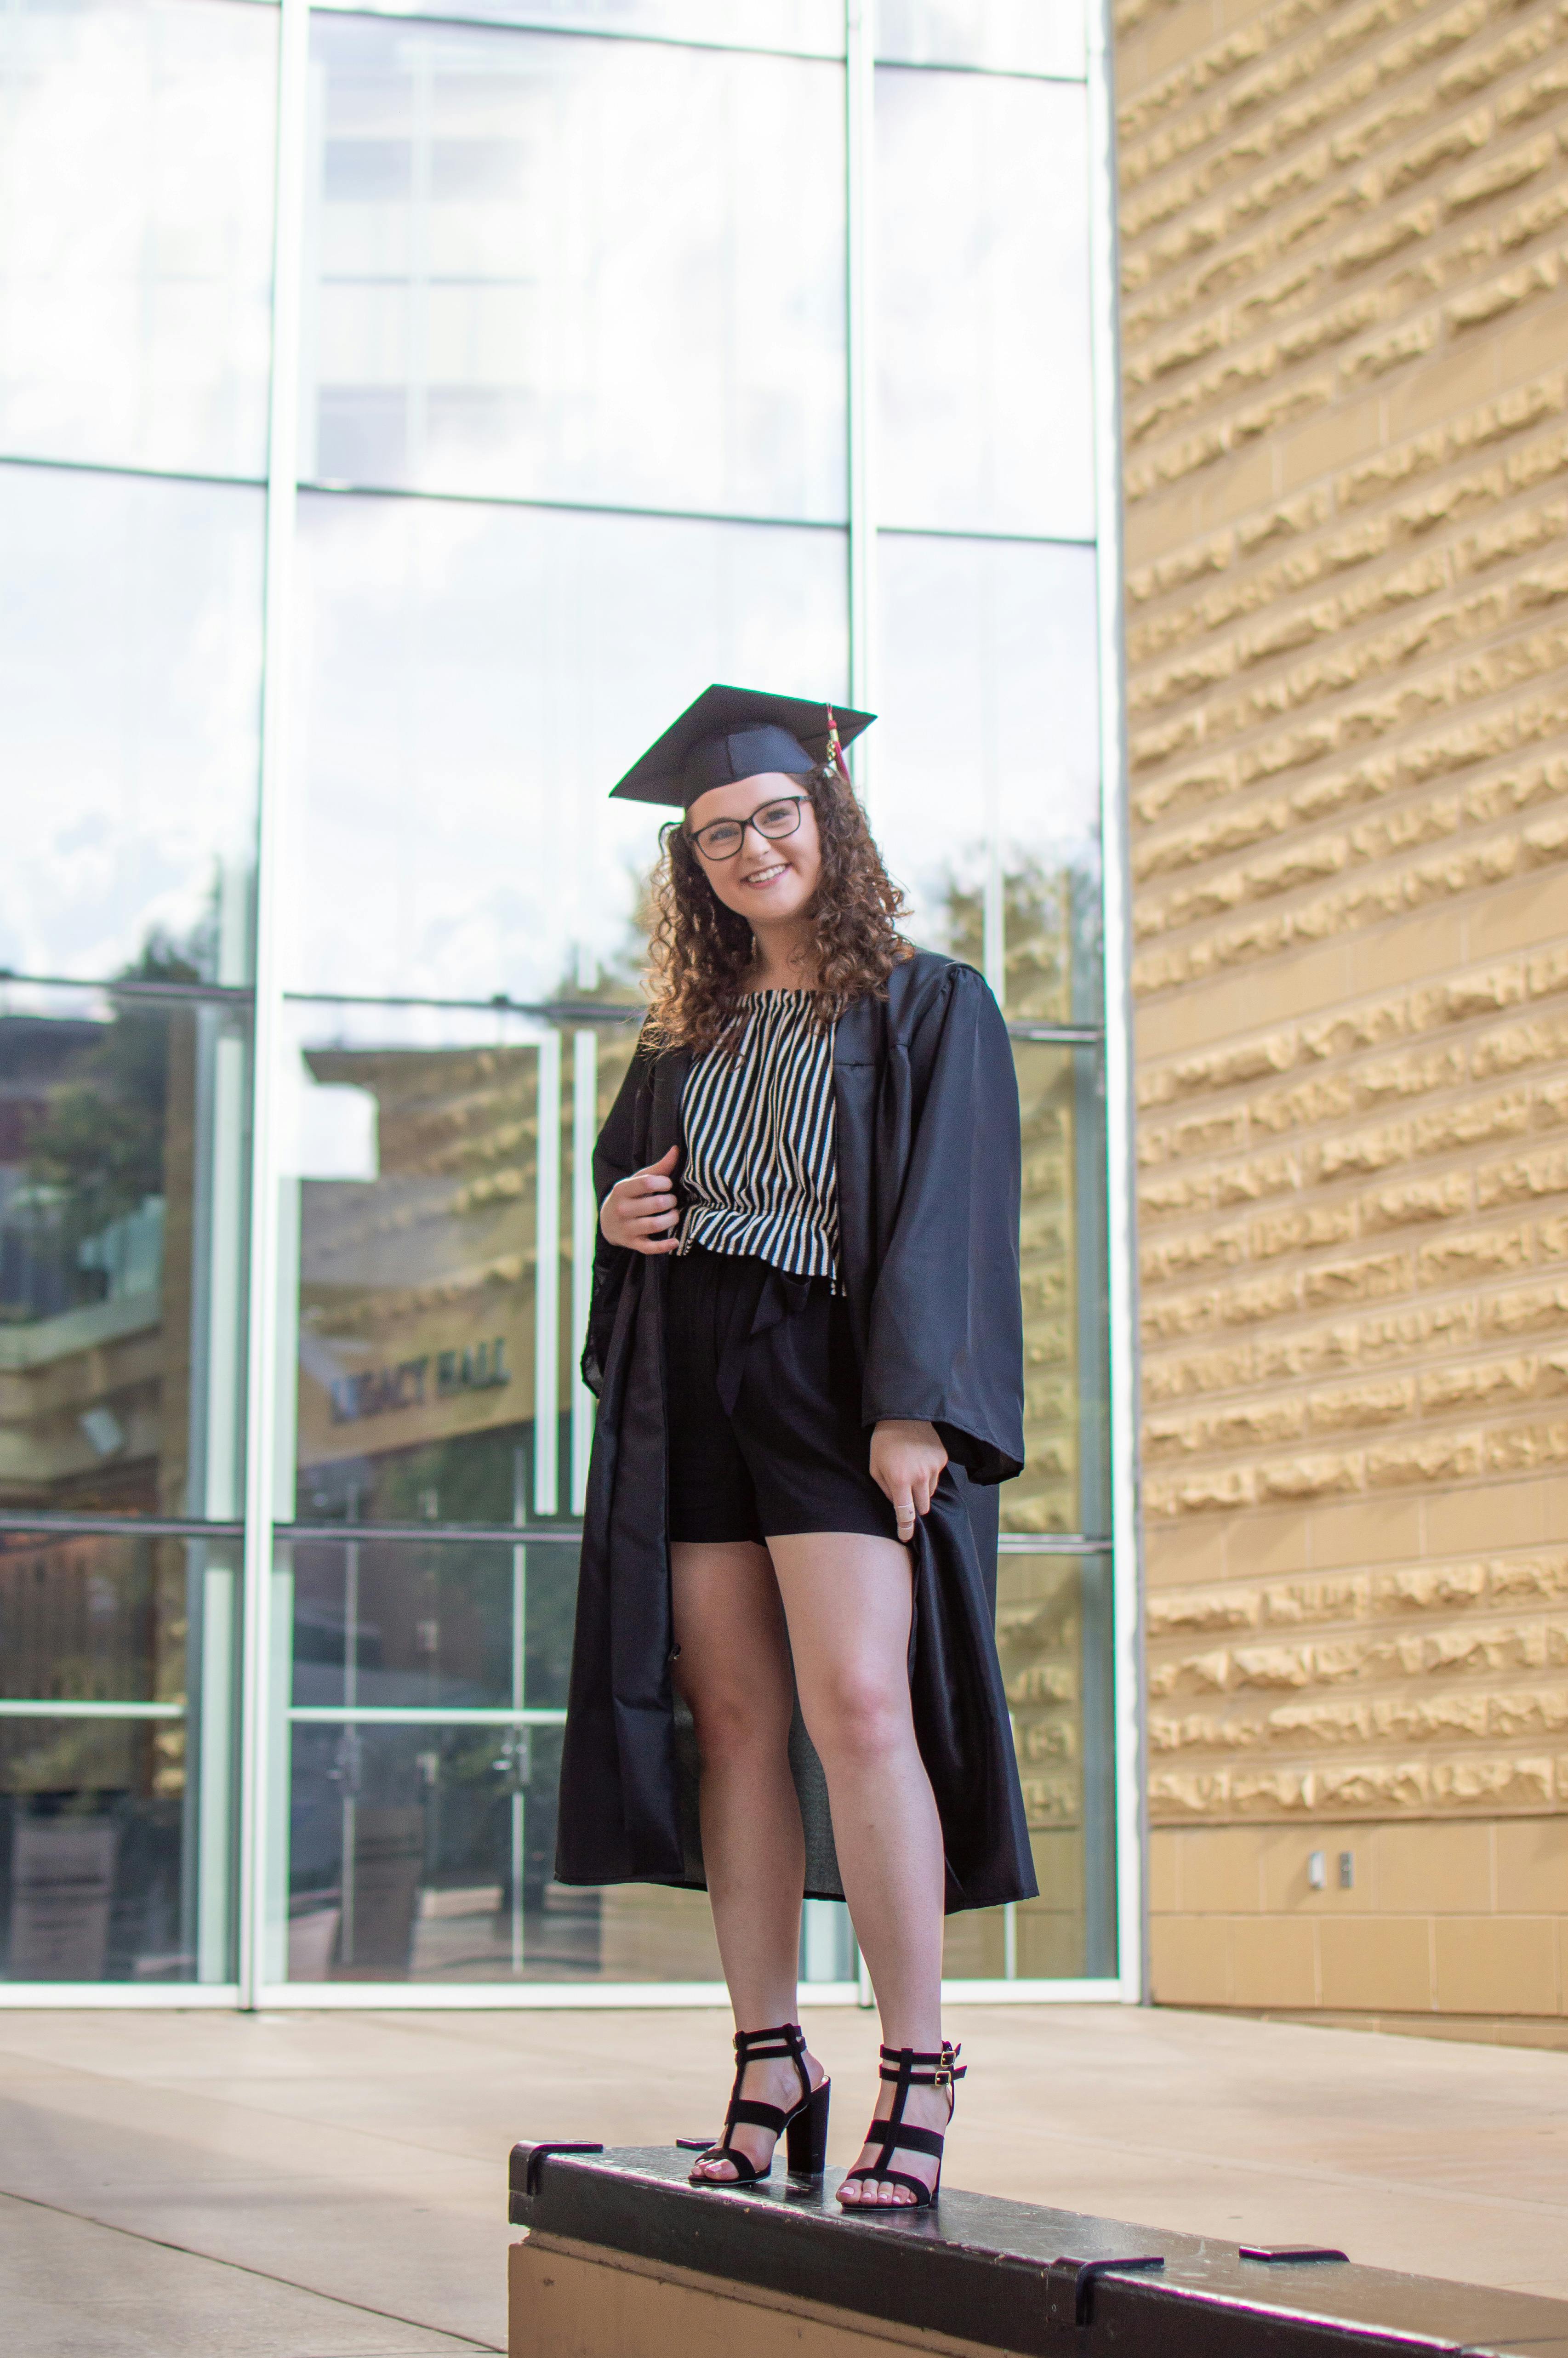 Ein stolzer College-Absolvent posiert für ein Foto | Quelle: Pexels